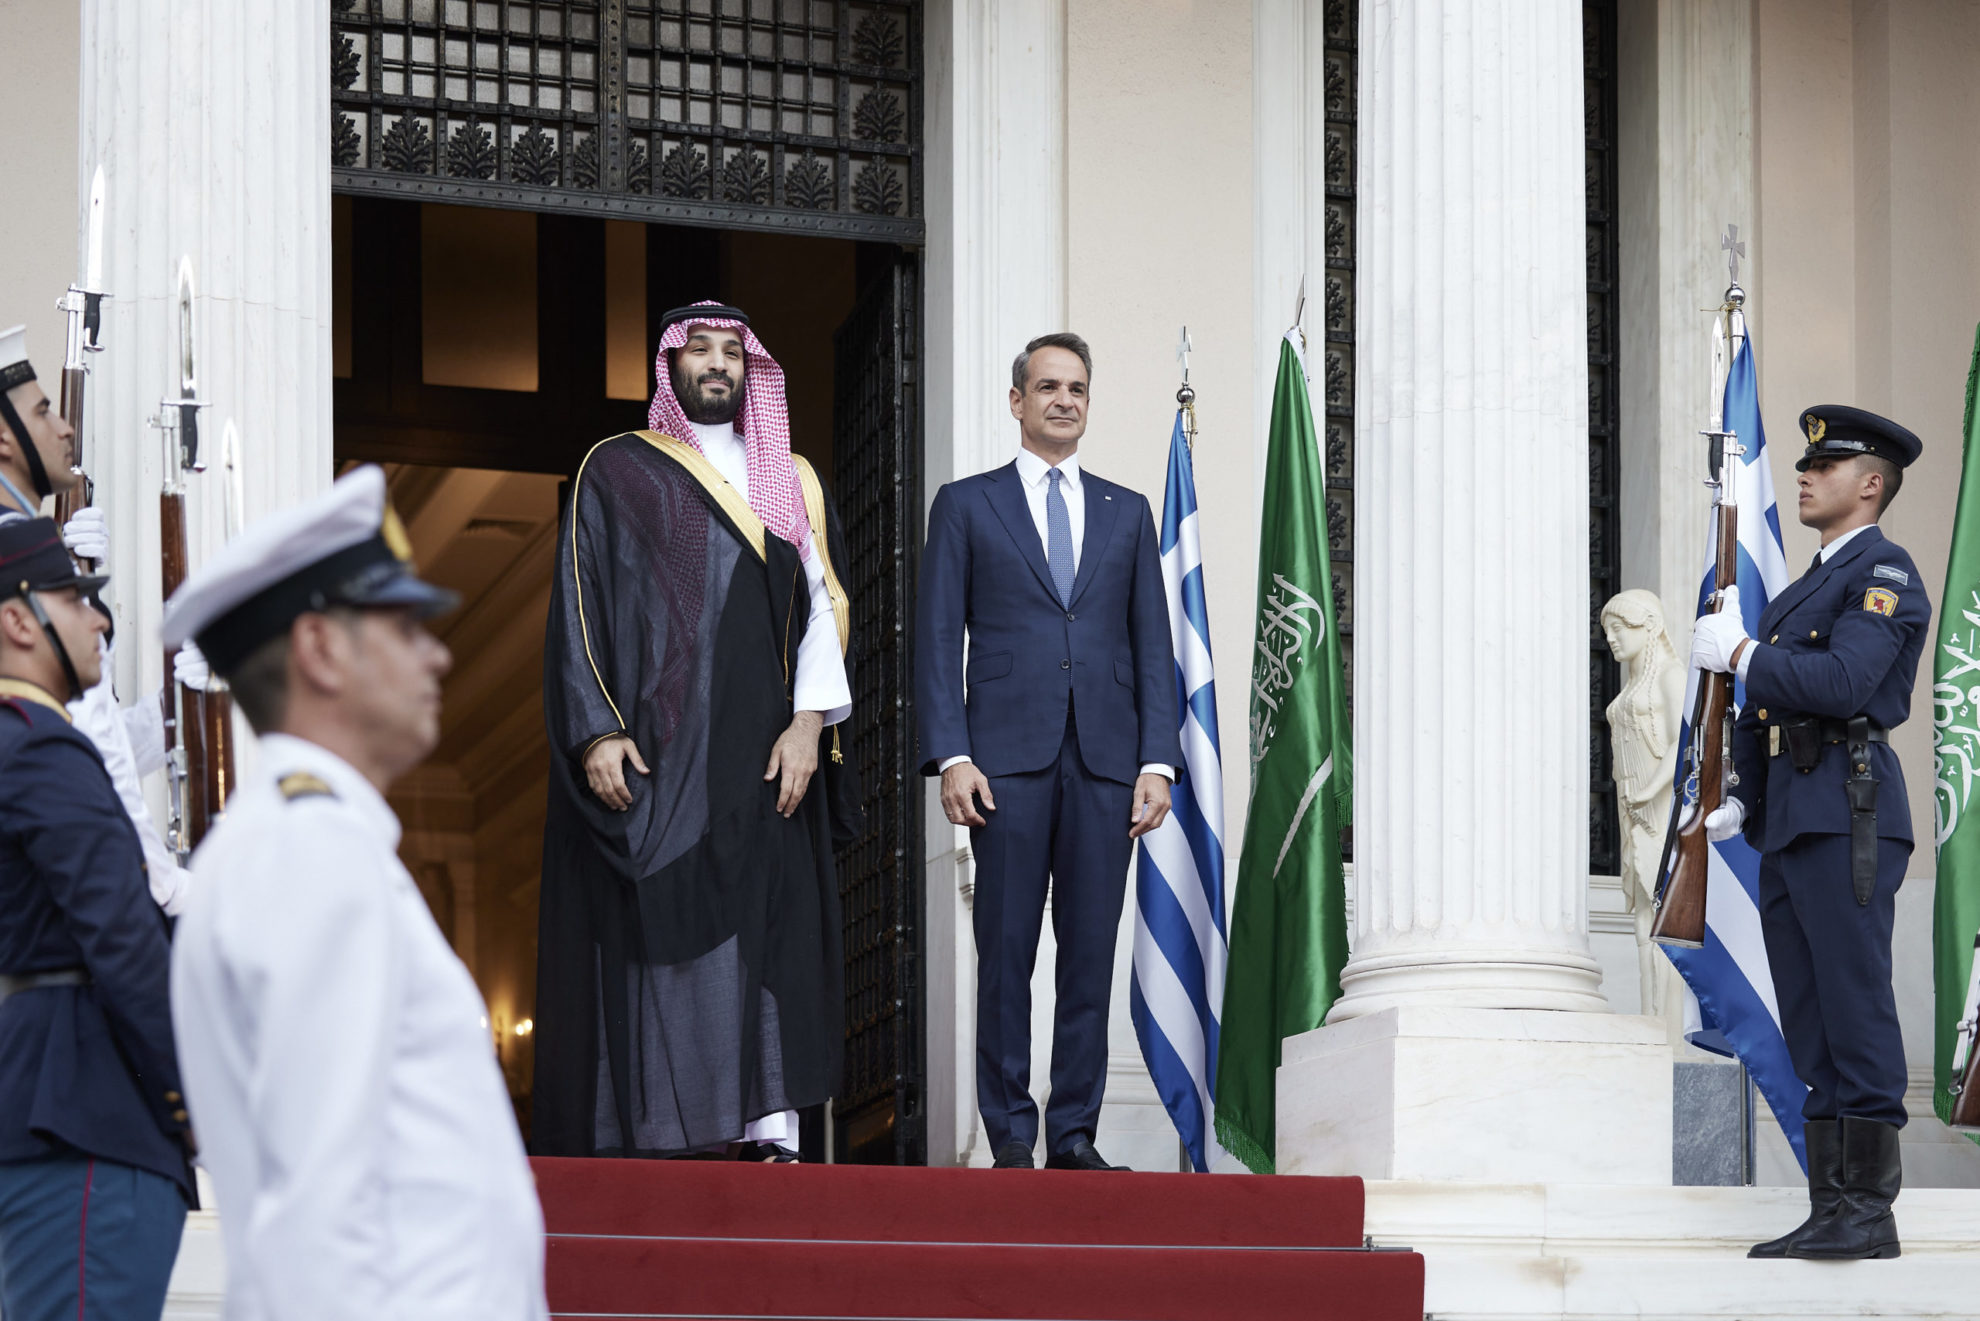 Επίσκεψη του Μοχάμεντ Μπιν Σαλμάν στην Αθήνα – Υπογράφονται μείζονος σημασίας συμφωνίες μεταξύ Ελλάδας-Σ. Αραβίας